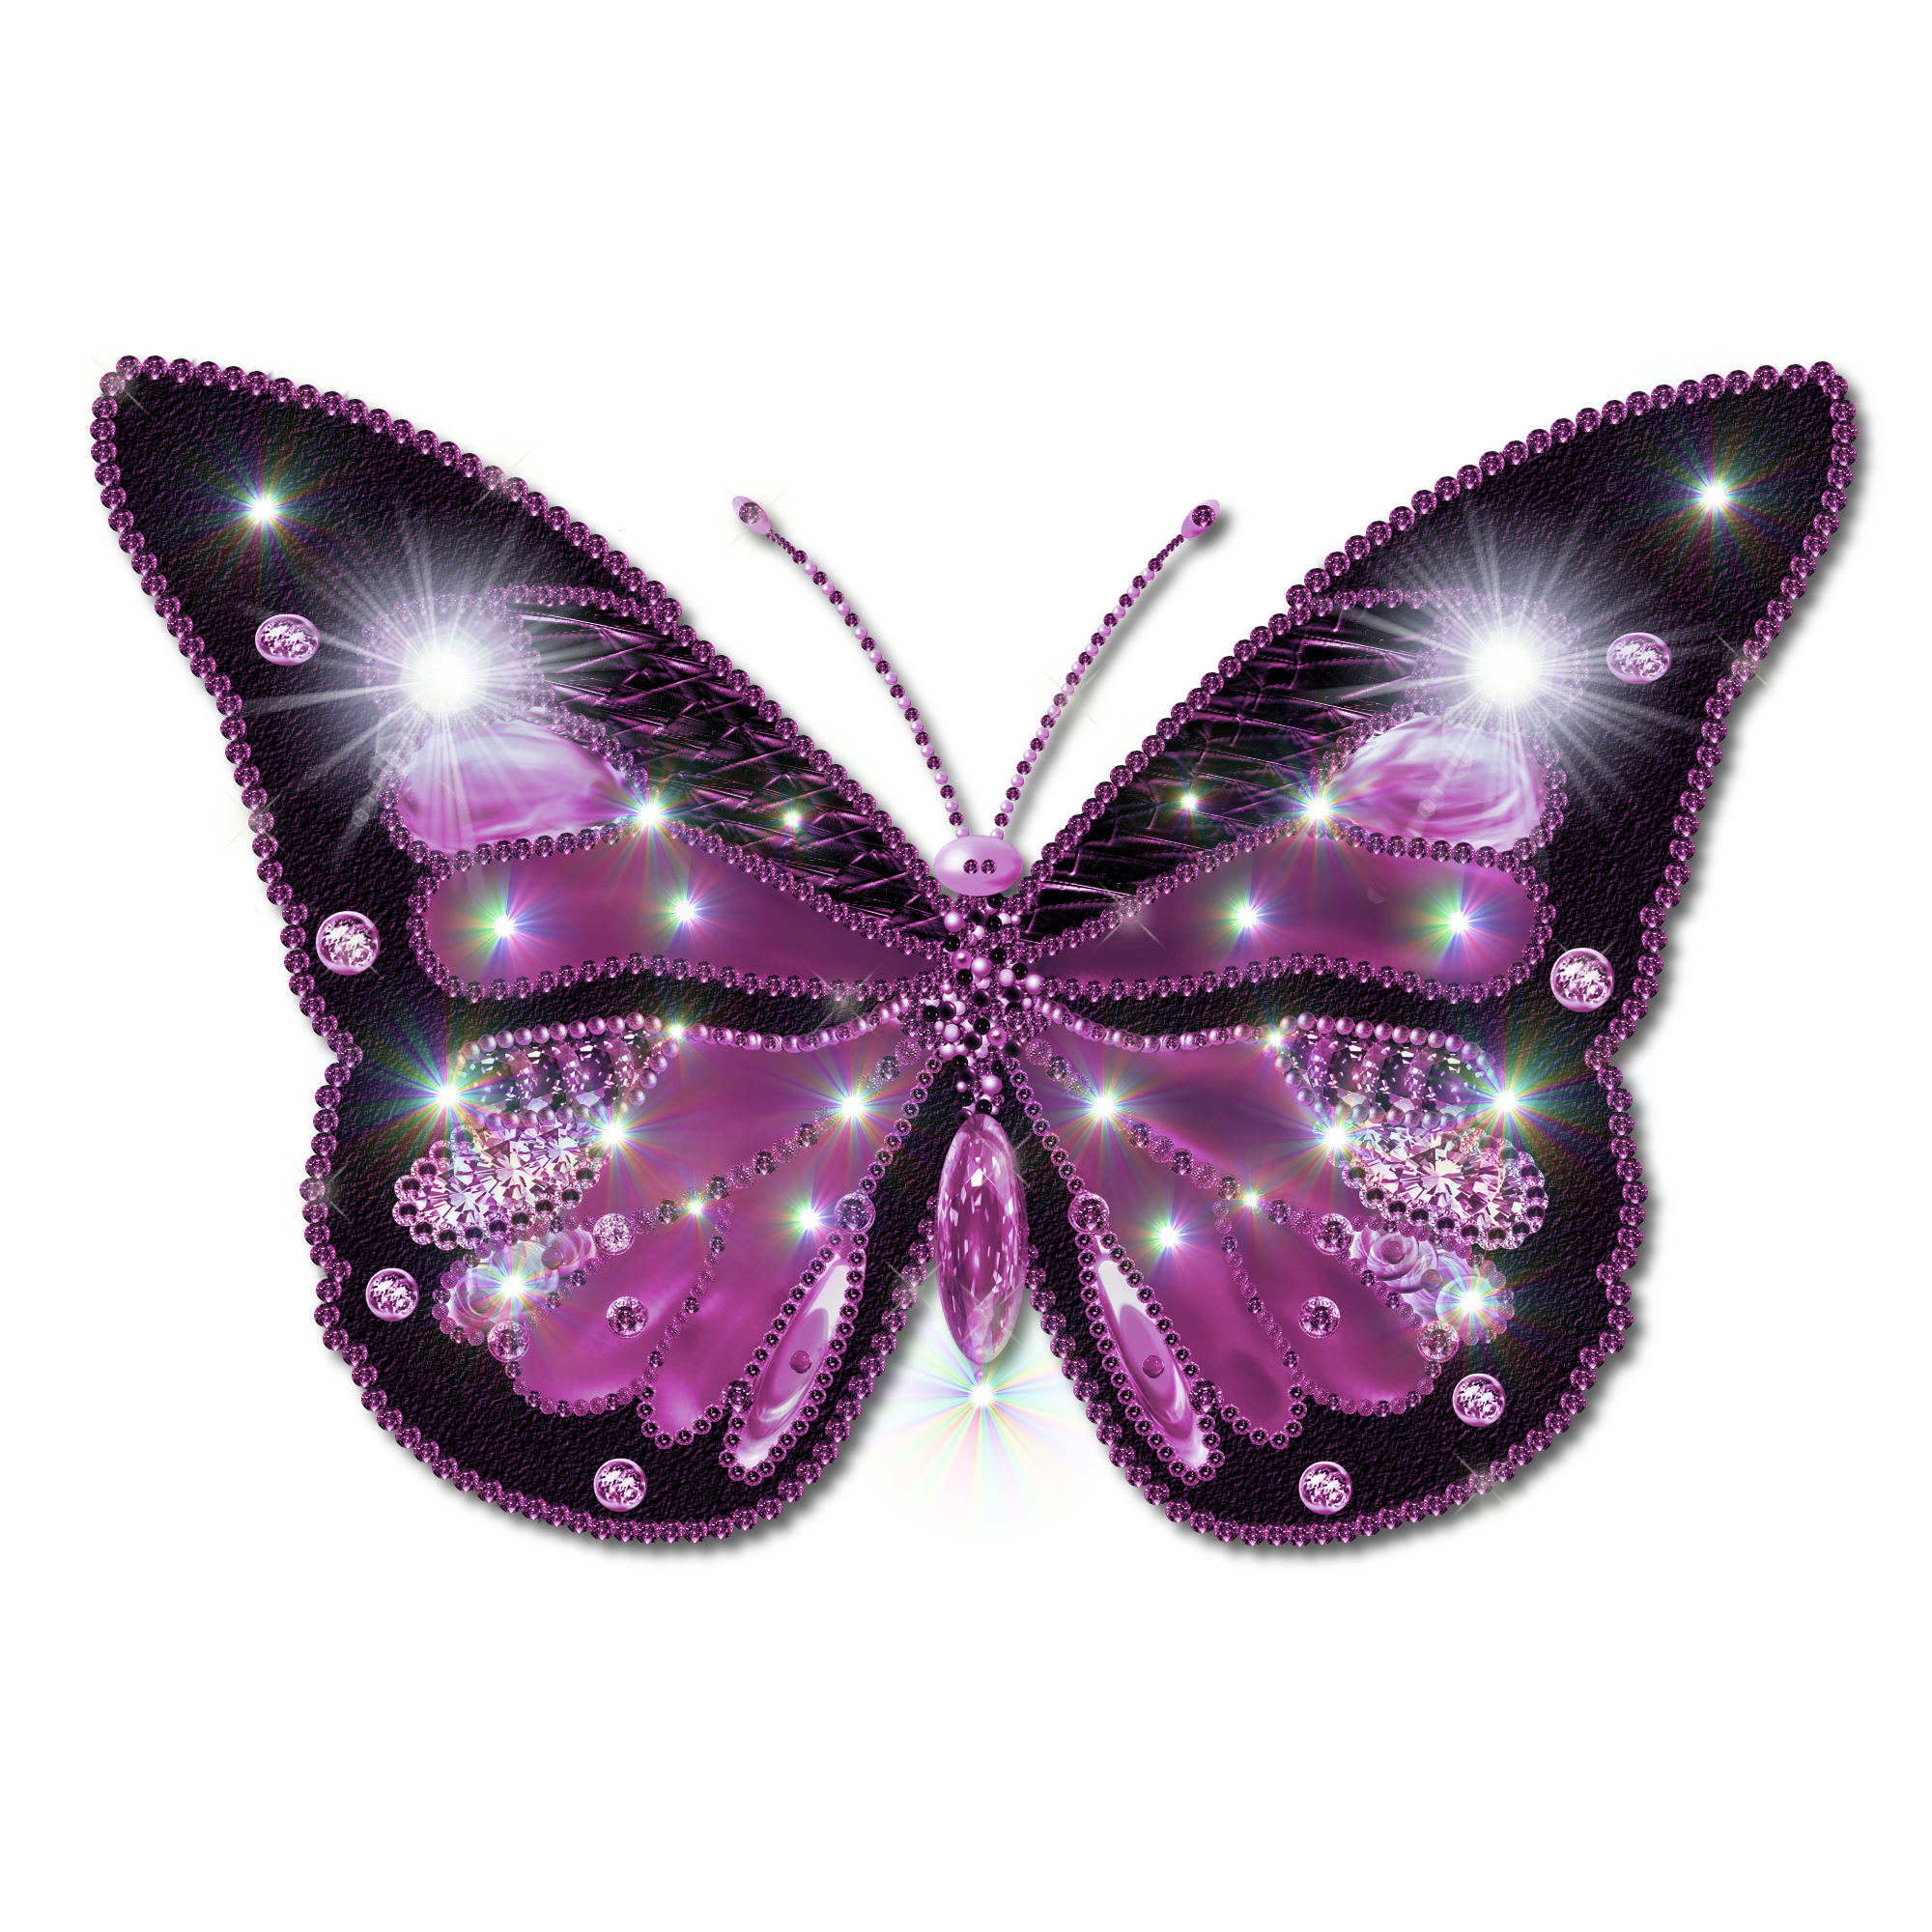 Butterflies PNG, Butterflies Transparent Background - FreeIconsPNG